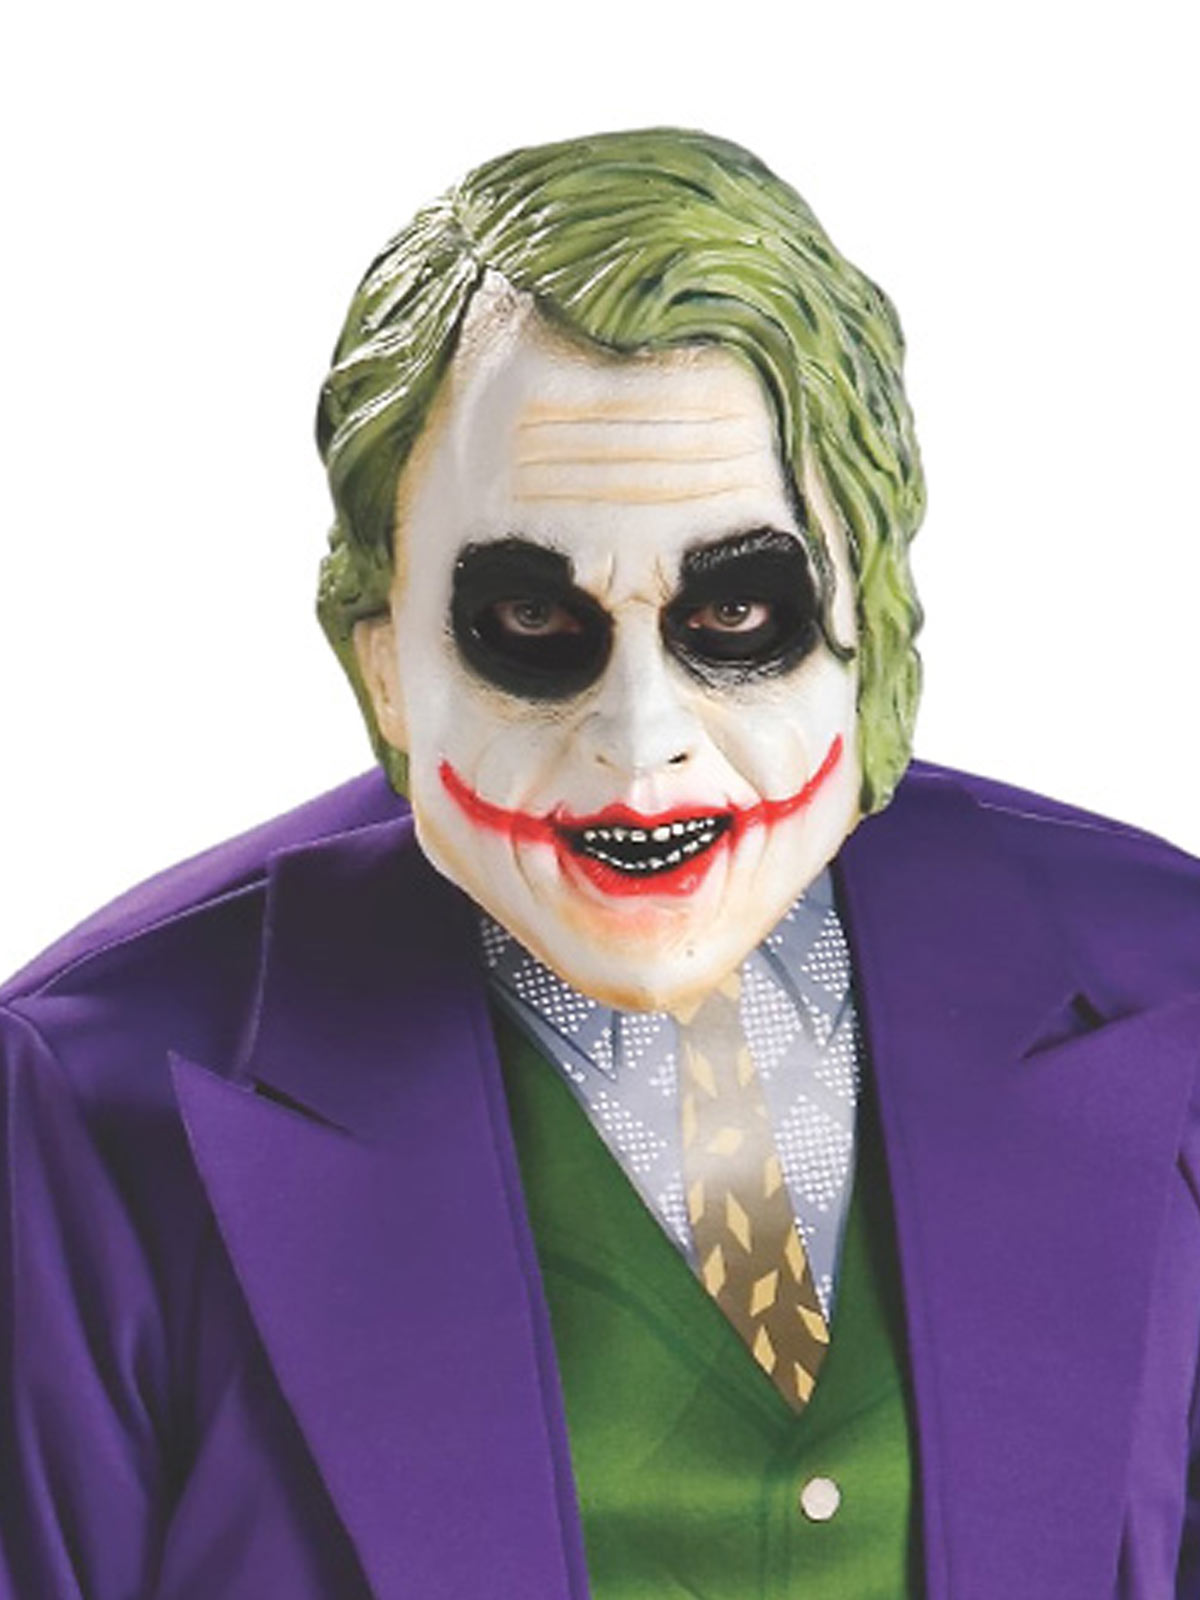 The Joker Costume Batman Villain Mens Costume - Licensed